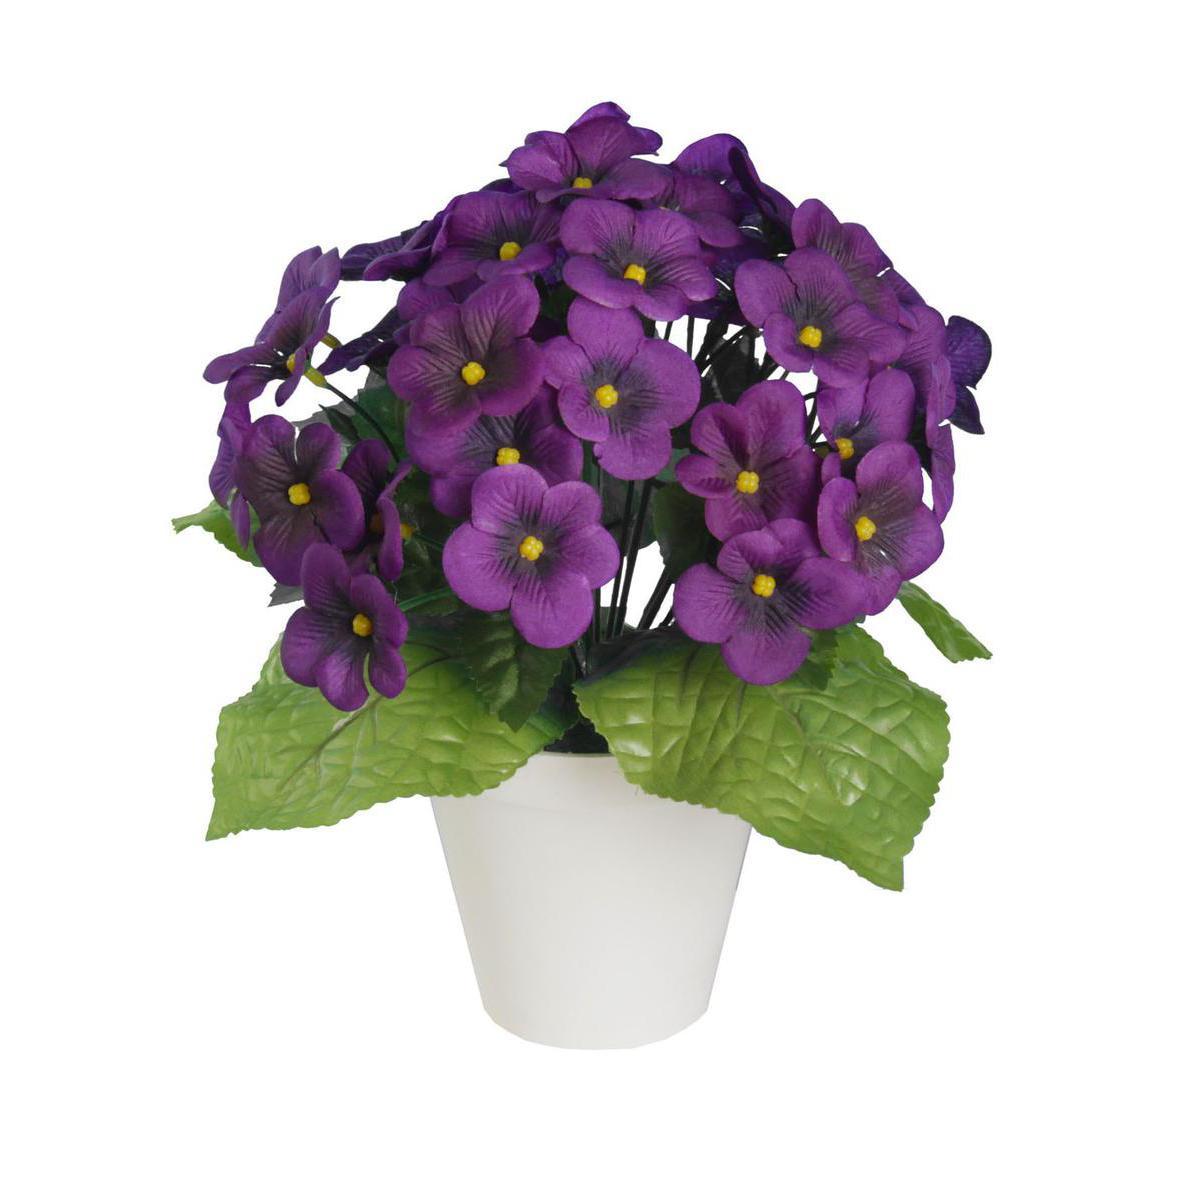 Violettes en pot lesté - Plastique et polyester - Diam. 11 x 23cm - Violet